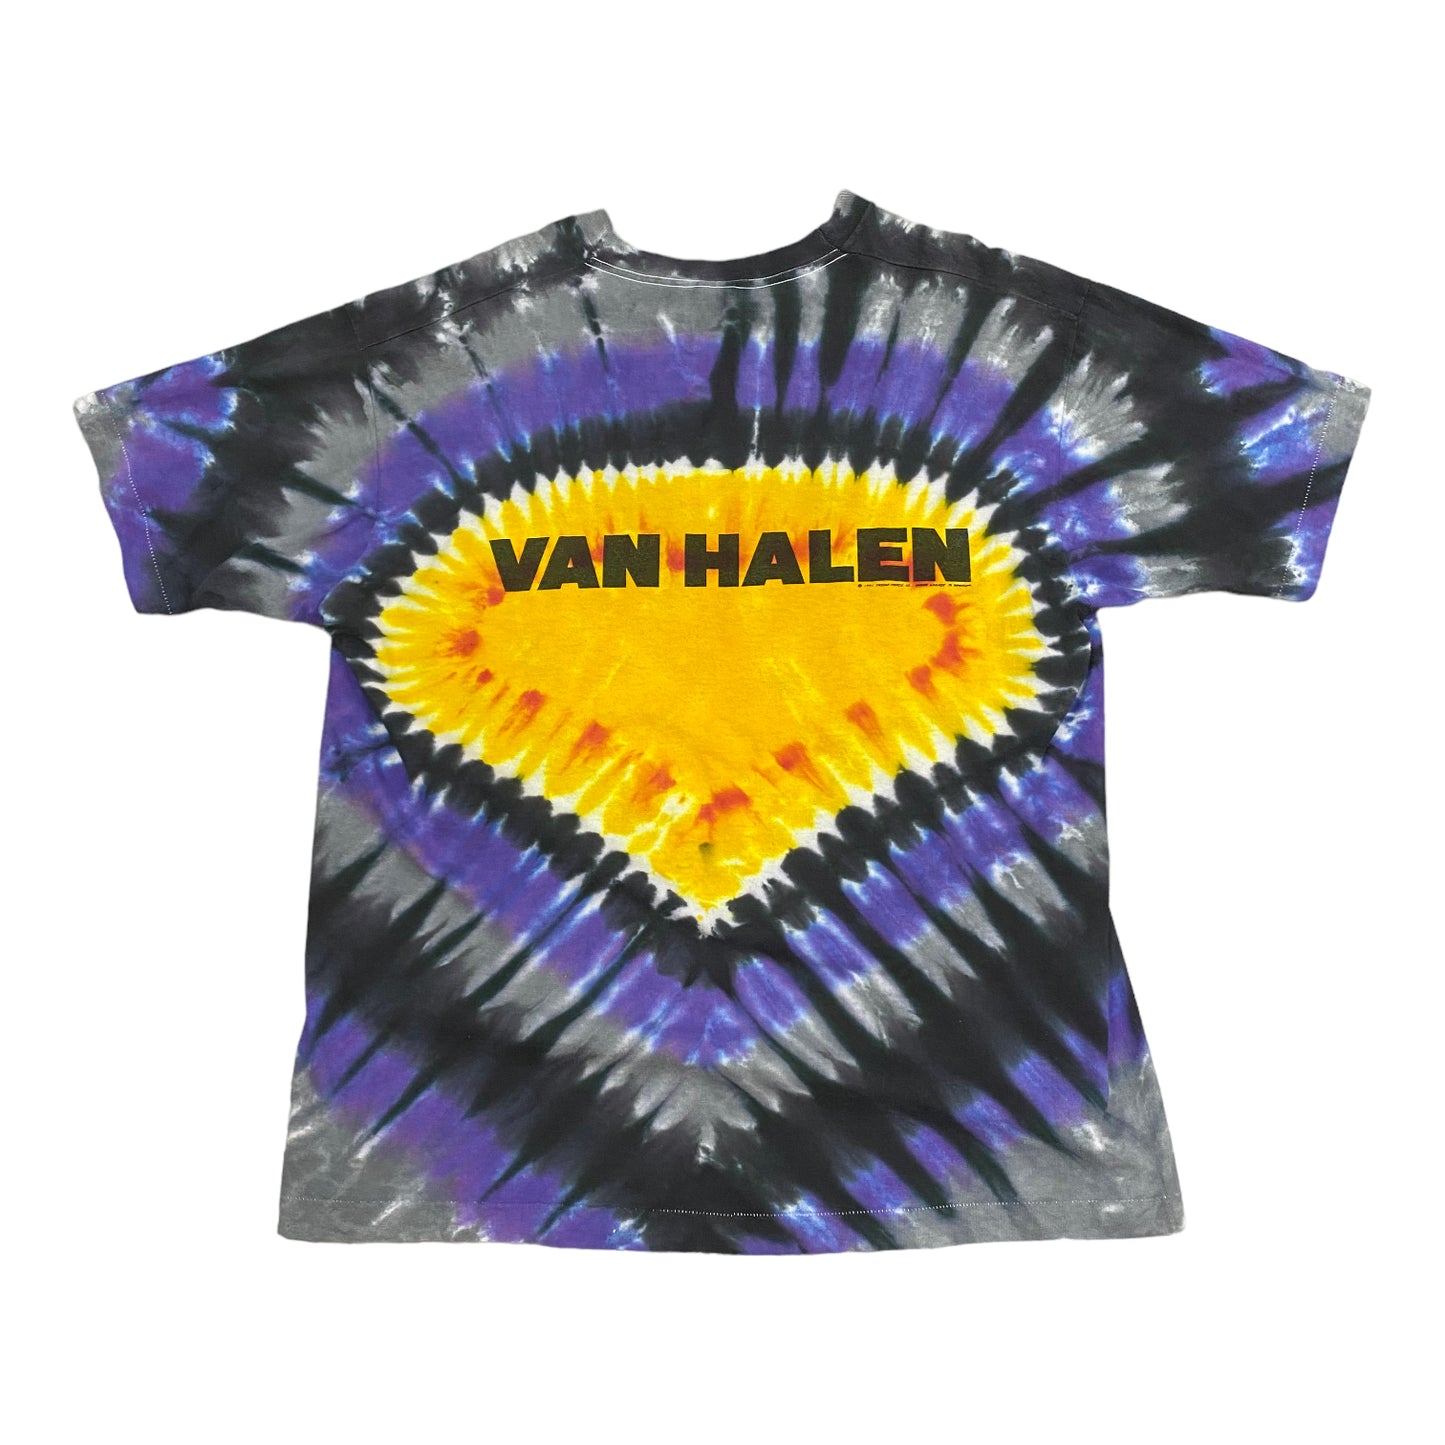 1991 Van Halen Carnal Knowledge Tie Dye Vintage Band Tee